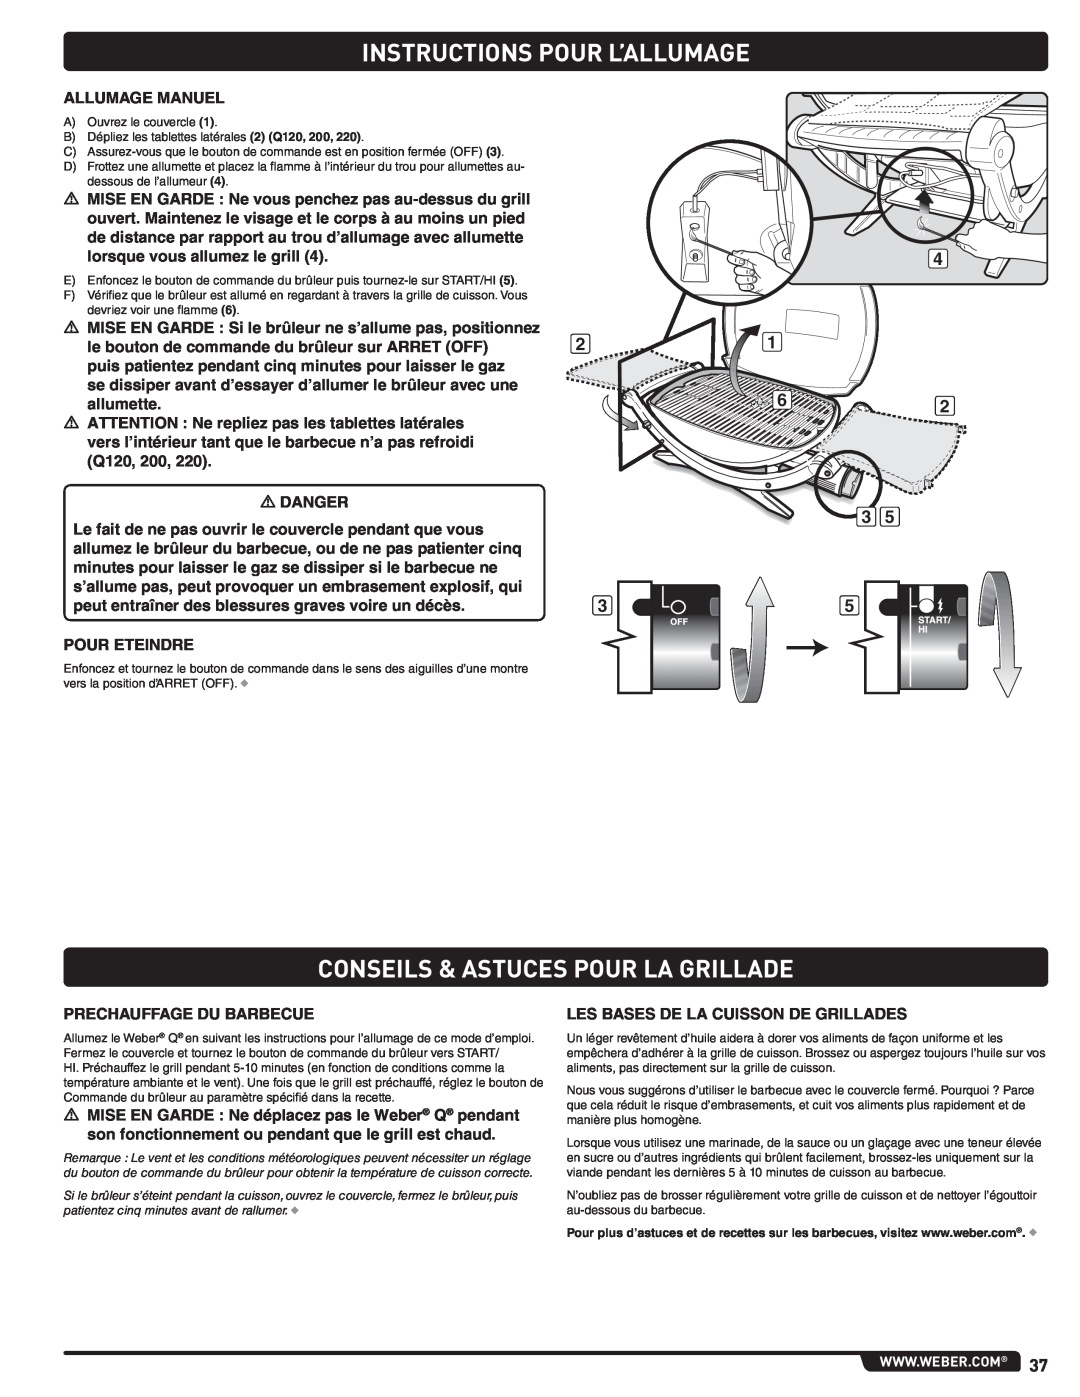 Weber LP GAS GRILL, 100, 220, 200, 120, 827020 Conseils & Astuces Pour La Grillade, Instructions Pour L’Allumage 